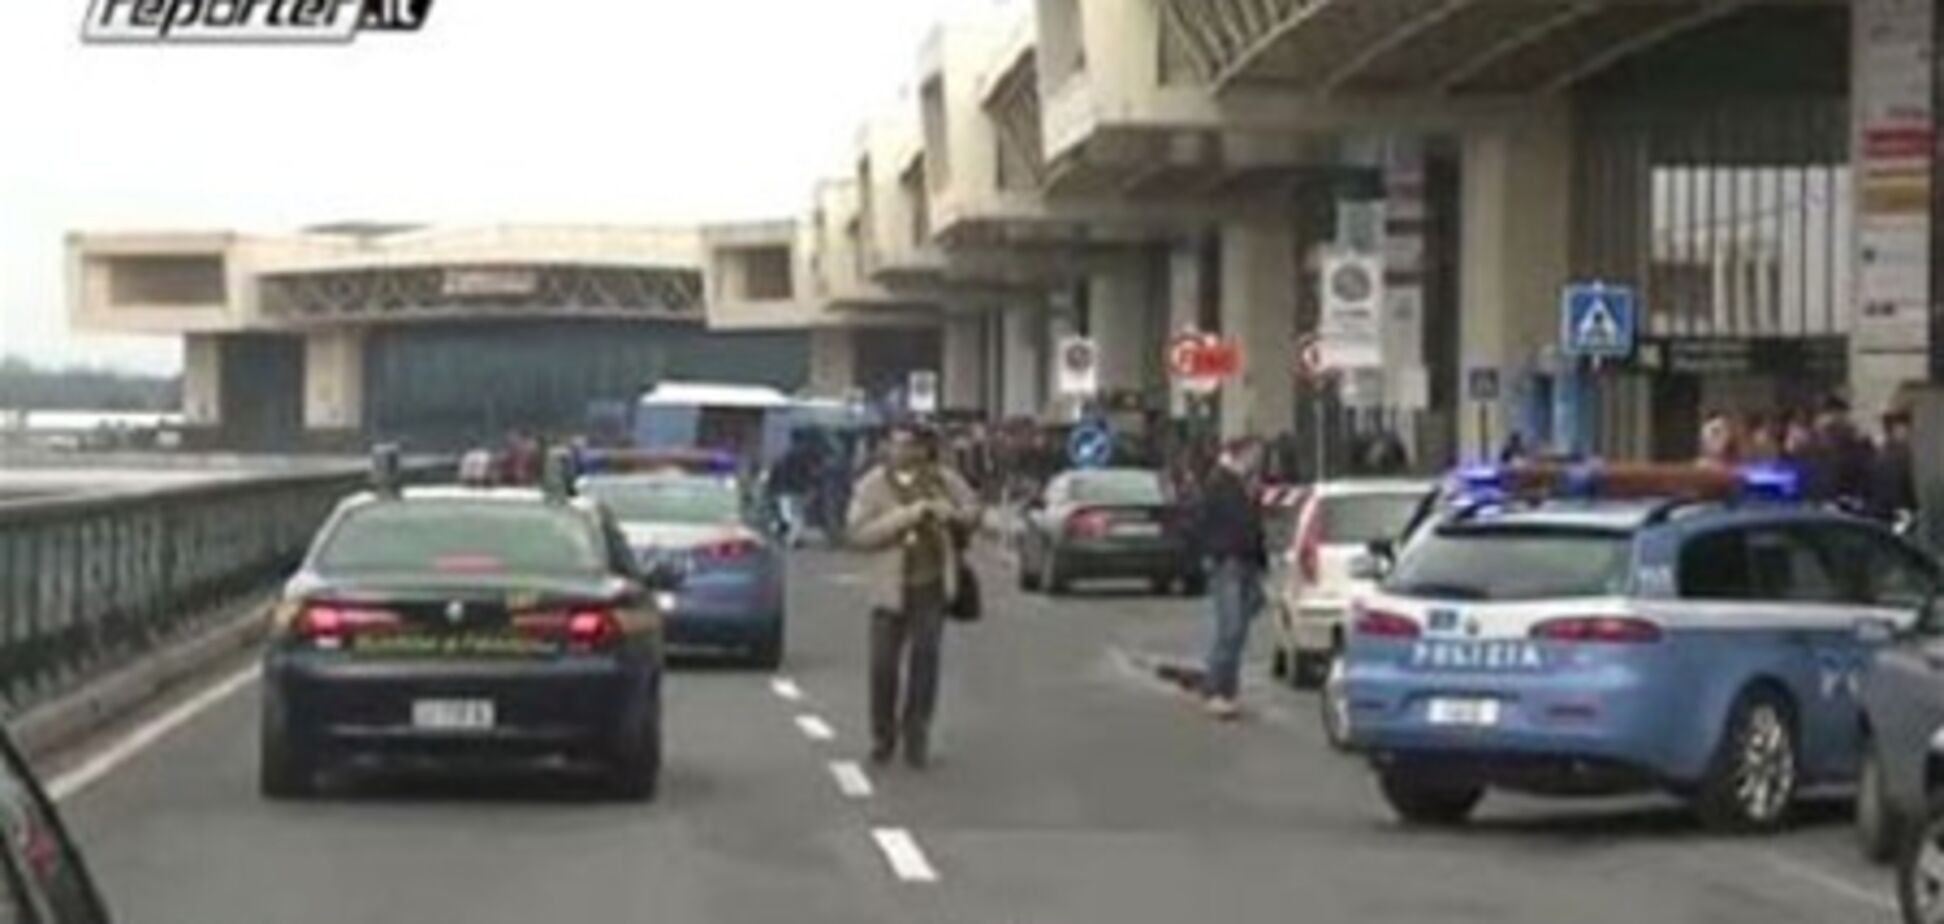 Стрельба в аэропорту Милана. Полиция исключает угрозу теракта. Обновлено